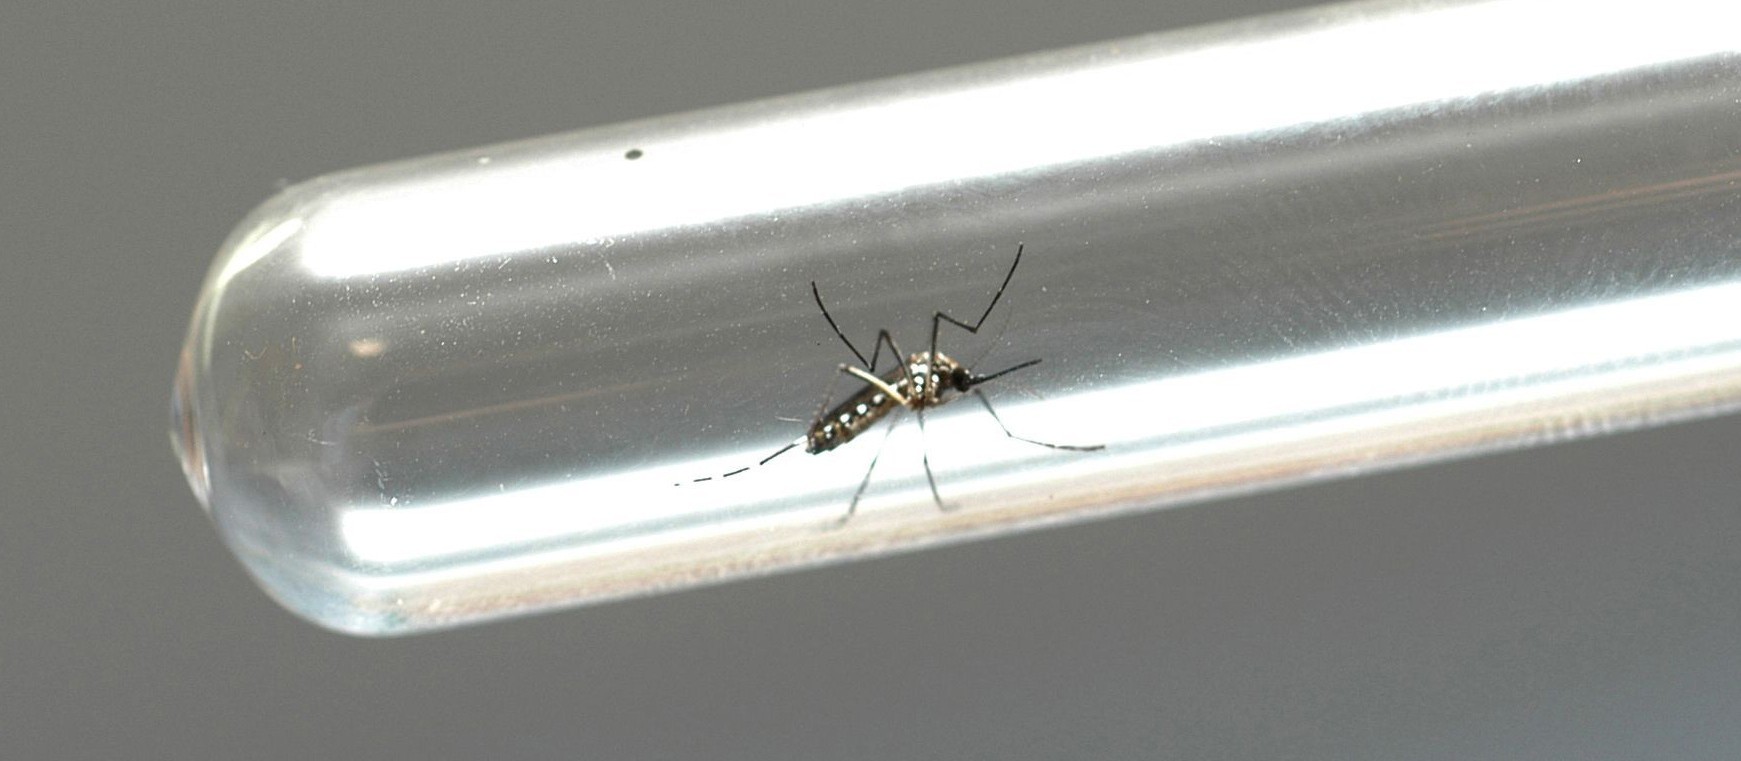 Paraná declara estado de epidemia de dengue. 287 cidades do estado têm casos confirmados da doença